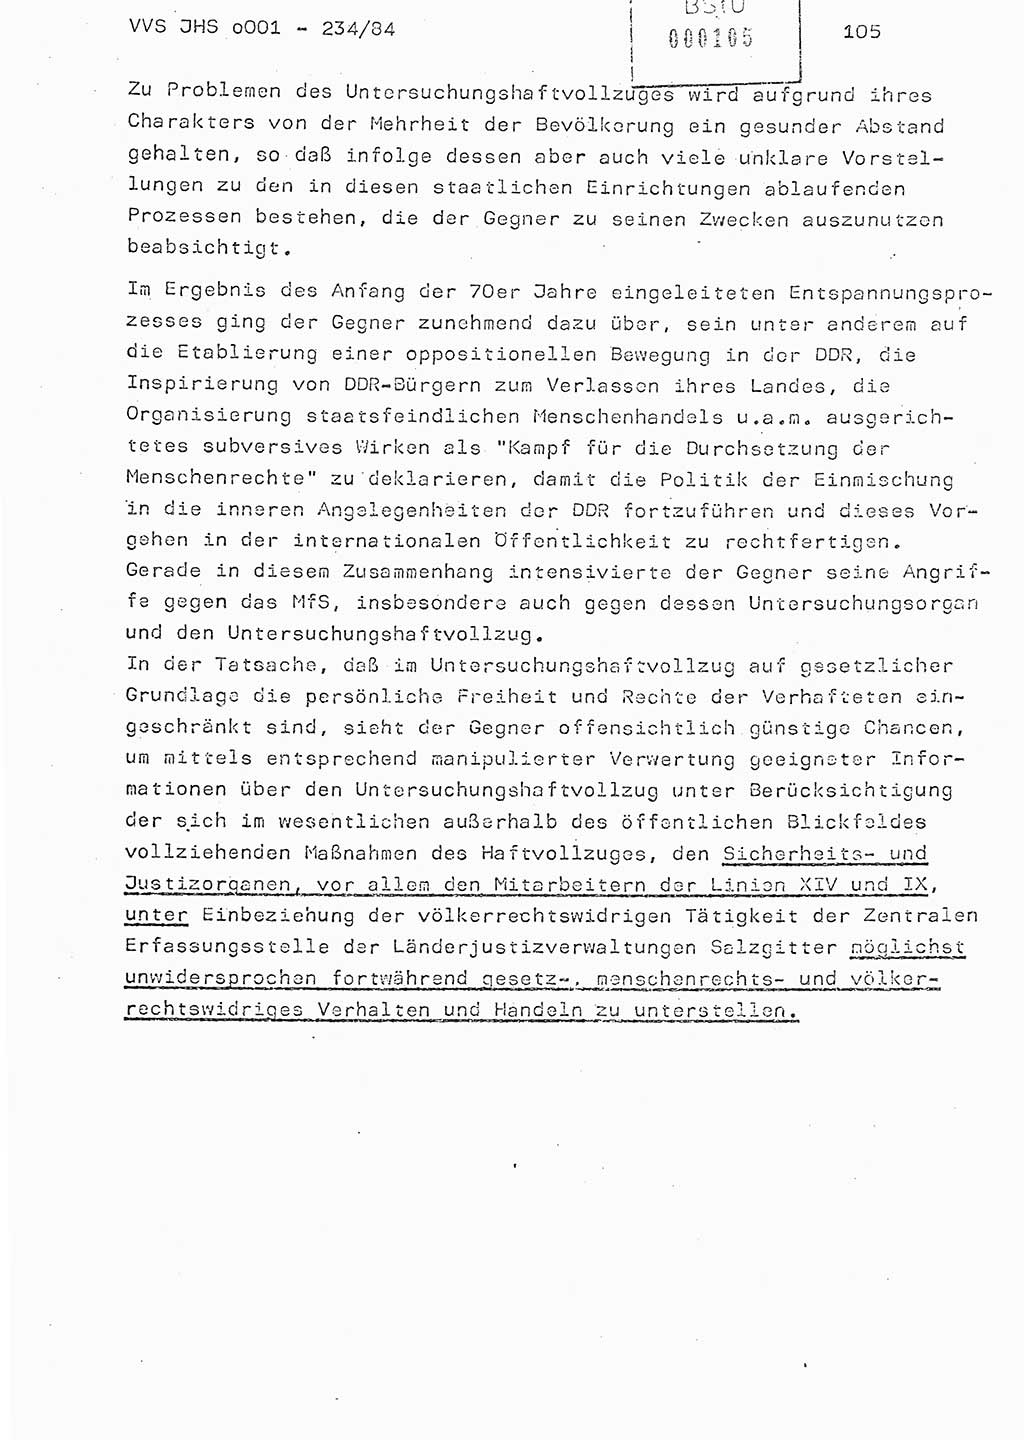 Dissertation Oberst Siegfried Rataizick (Abt. ⅩⅣ), Oberstleutnant Volkmar Heinz (Abt. ⅩⅣ), Oberstleutnant Werner Stein (HA Ⅸ), Hauptmann Heinz Conrad (JHS), Ministerium für Staatssicherheit (MfS) [Deutsche Demokratische Republik (DDR)], Juristische Hochschule (JHS), Vertrauliche Verschlußsache (VVS) o001-234/84, Potsdam 1984, Seite 105 (Diss. MfS DDR JHS VVS o001-234/84 1984, S. 105)